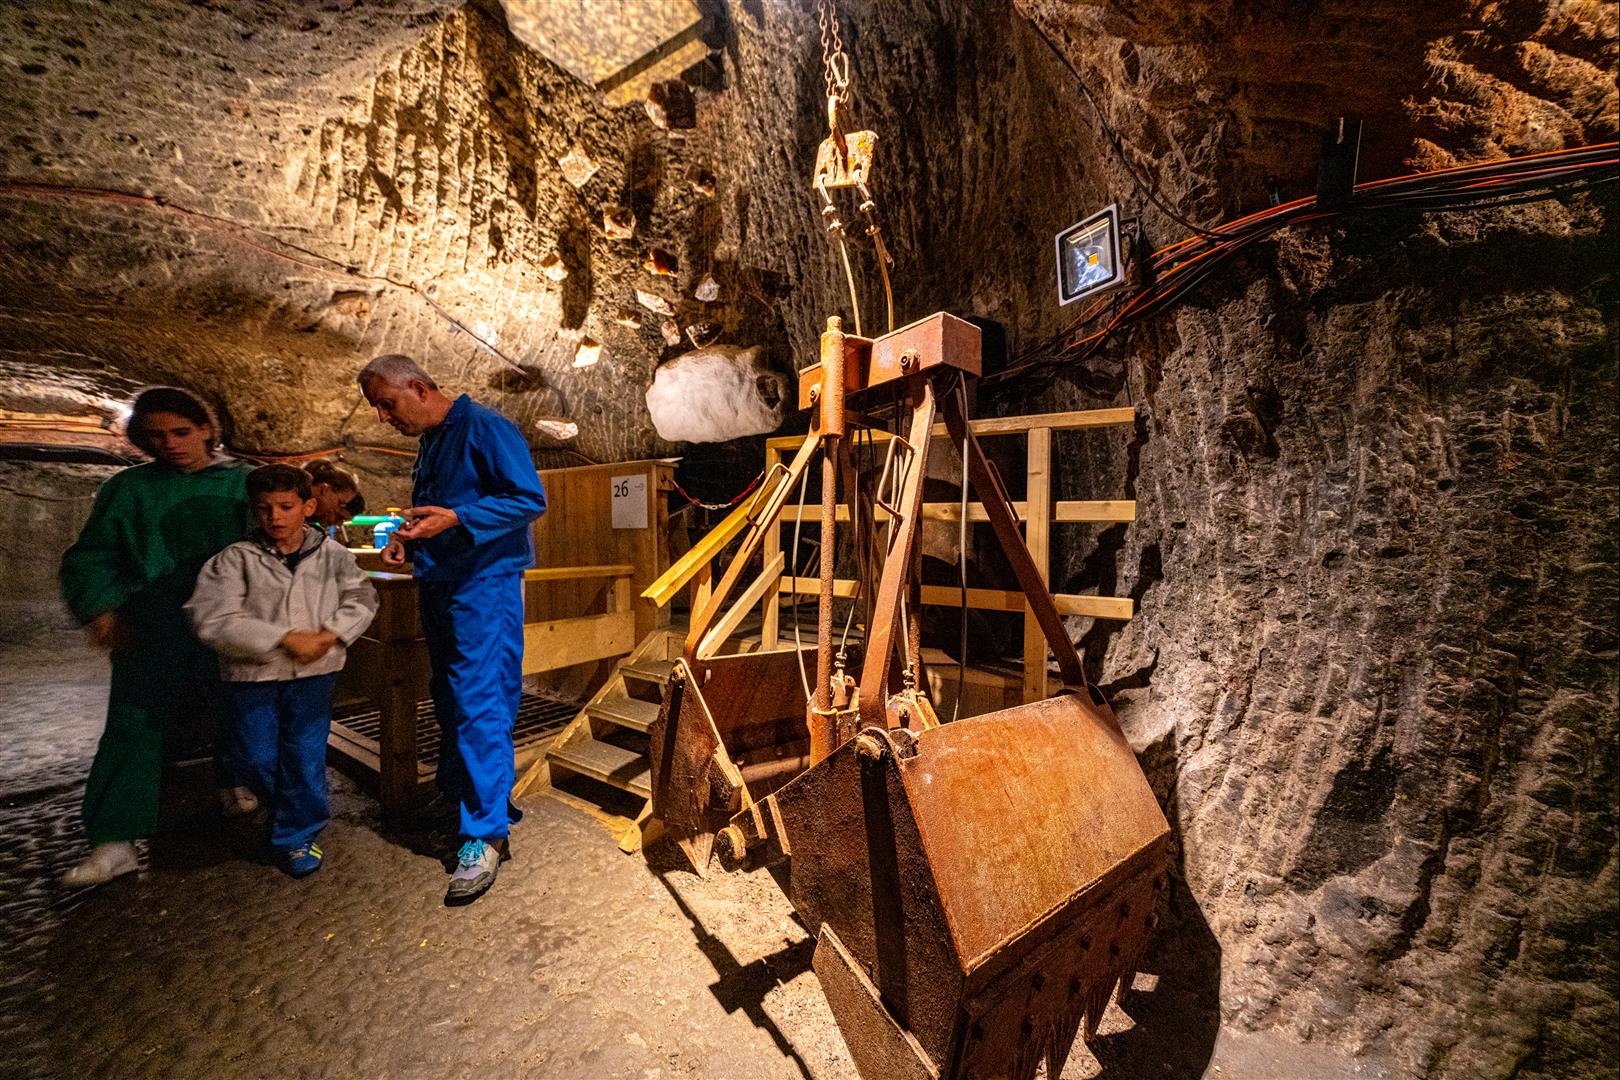 [2019 中歐攝影旅行] Day07 - 格拉茲 Graz、哈斯塔特 Hallstatt、哈斯塔特鹽礦 Salt Mine 體驗